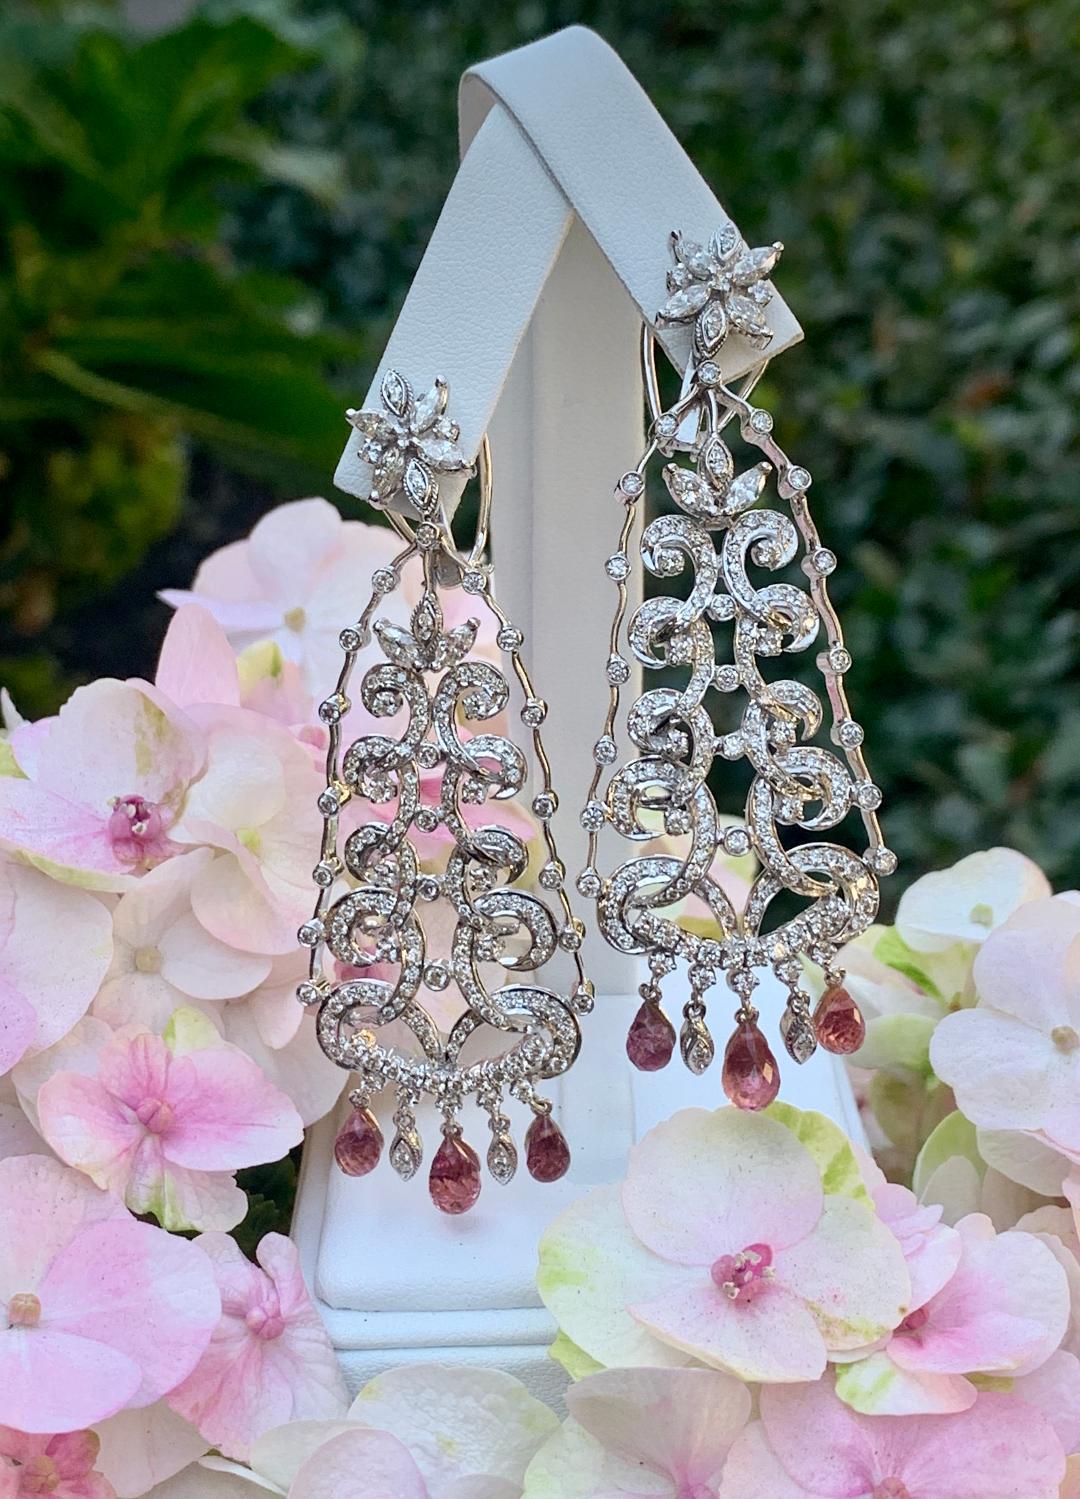 Diese bezaubernden Kronleuchter-Ohrringe aus 18 Karat Weißgold für durchbohrte Ohren bestechen durch ihr kunstvolles Design mit filigranen Diamanten und rosafarbenen Saphirtropfen, die einfach umwerfend sind!  Sie sind dazu bestimmt, Ihren Abend zu